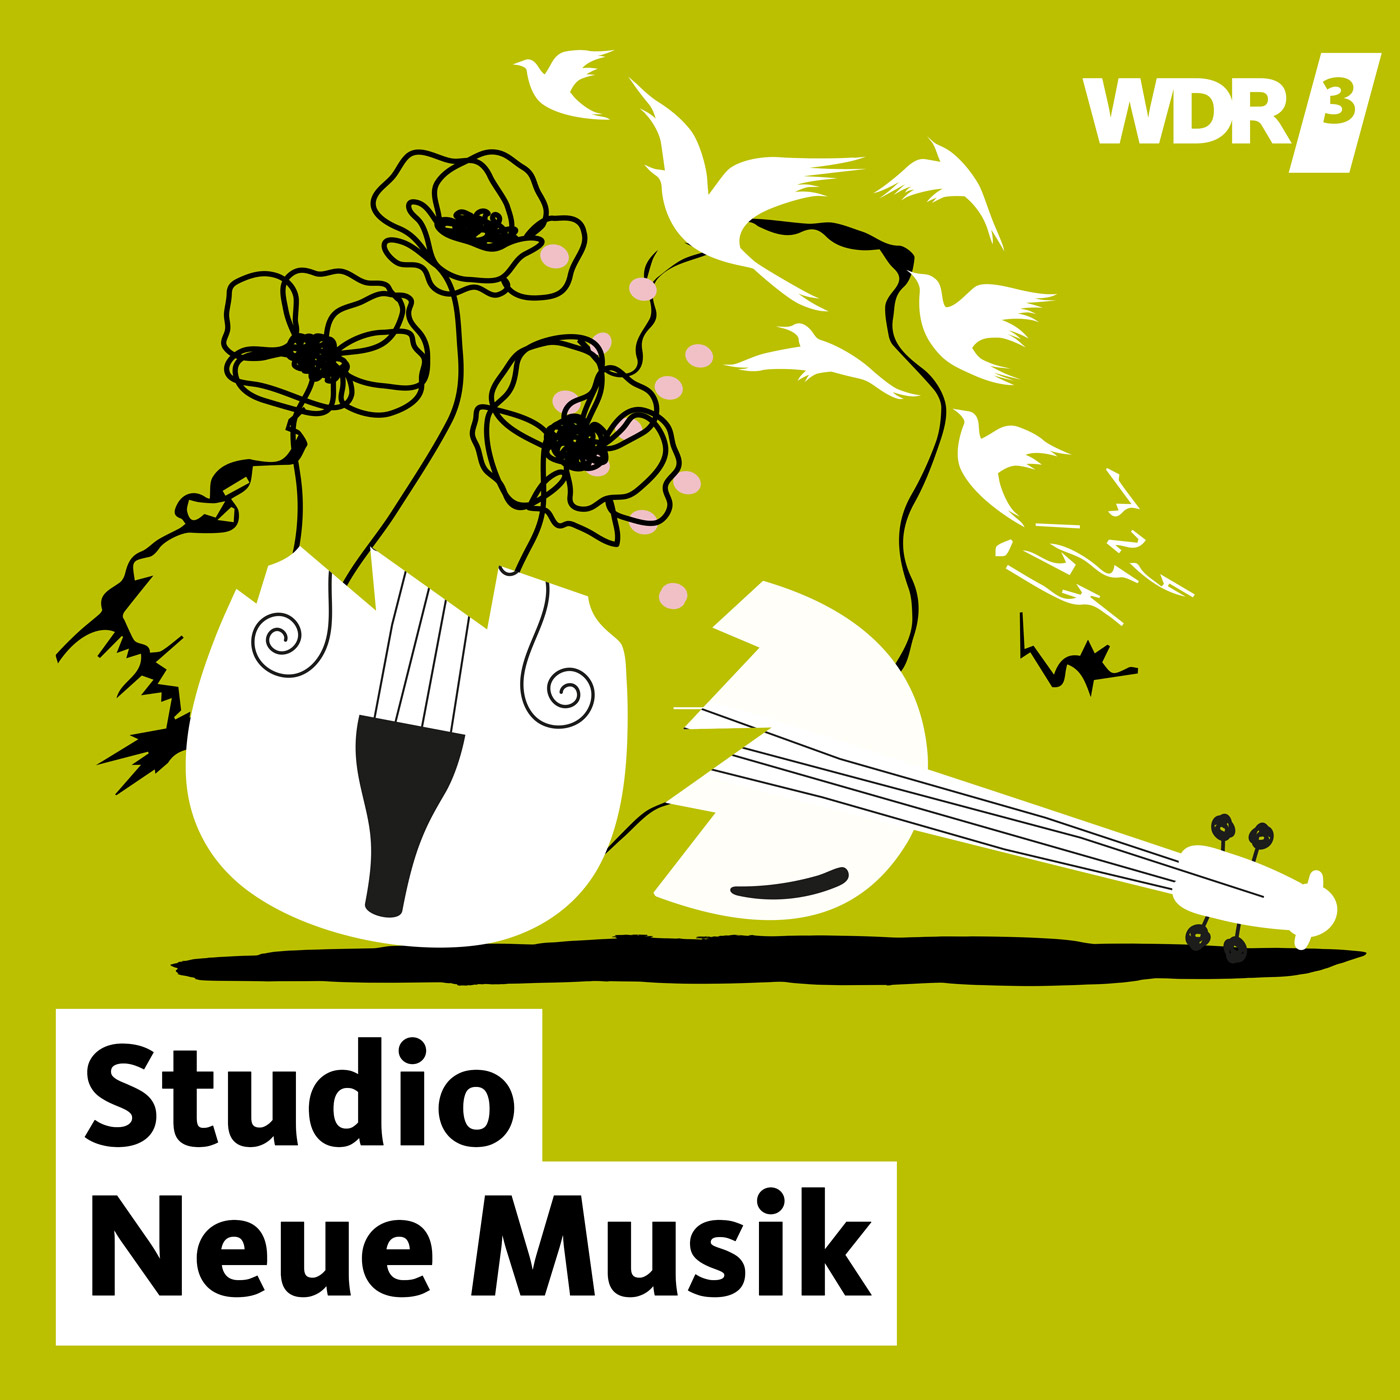 Ihr Ohr an der Musik der Zeit, WDR 3 Studio Neue Musik - WDR 3